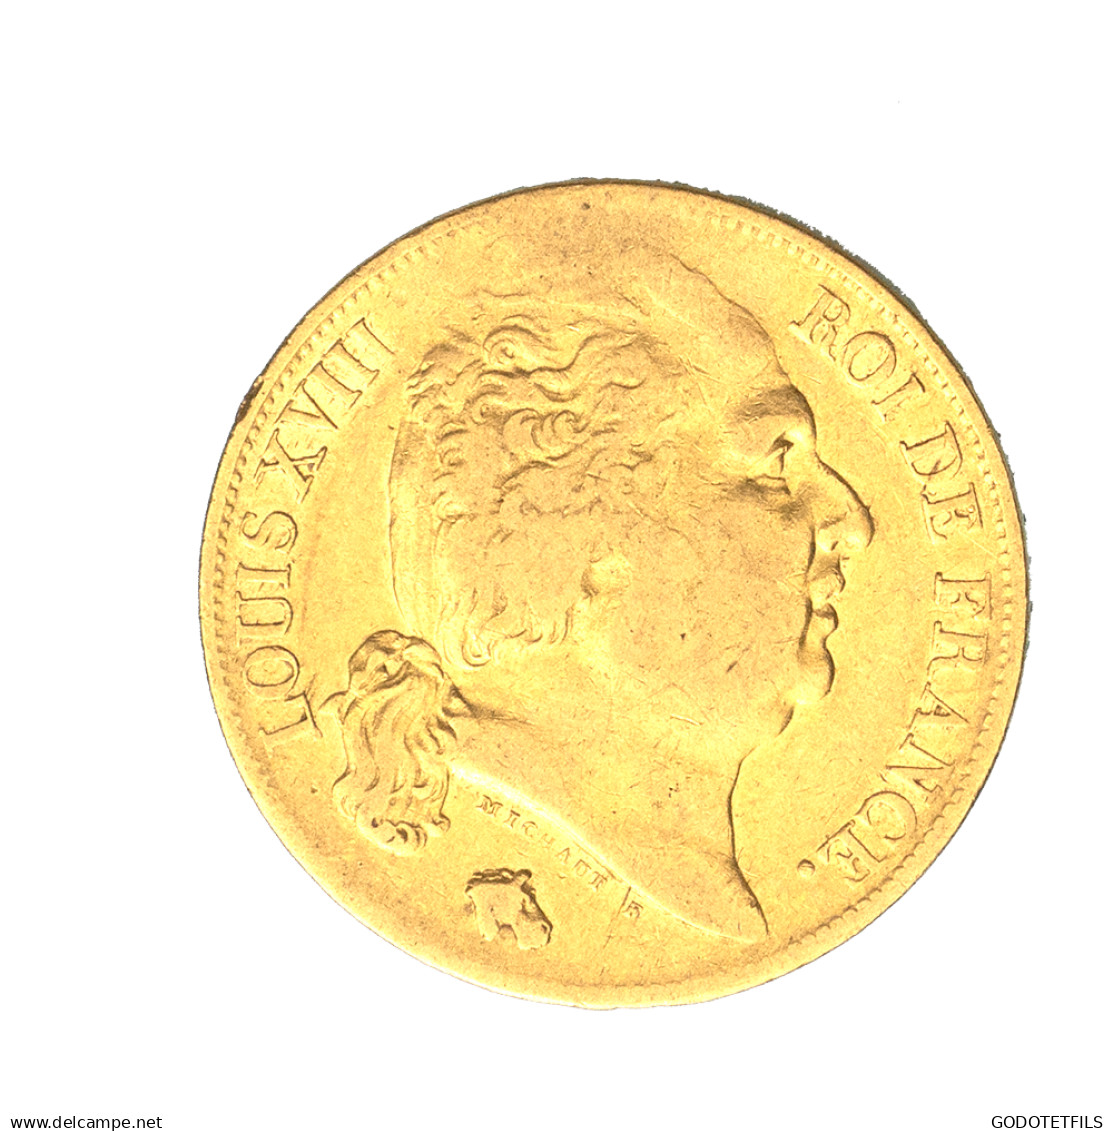 Louis XVIII-20 Francs 1819 Lille - 20 Francs (gold)